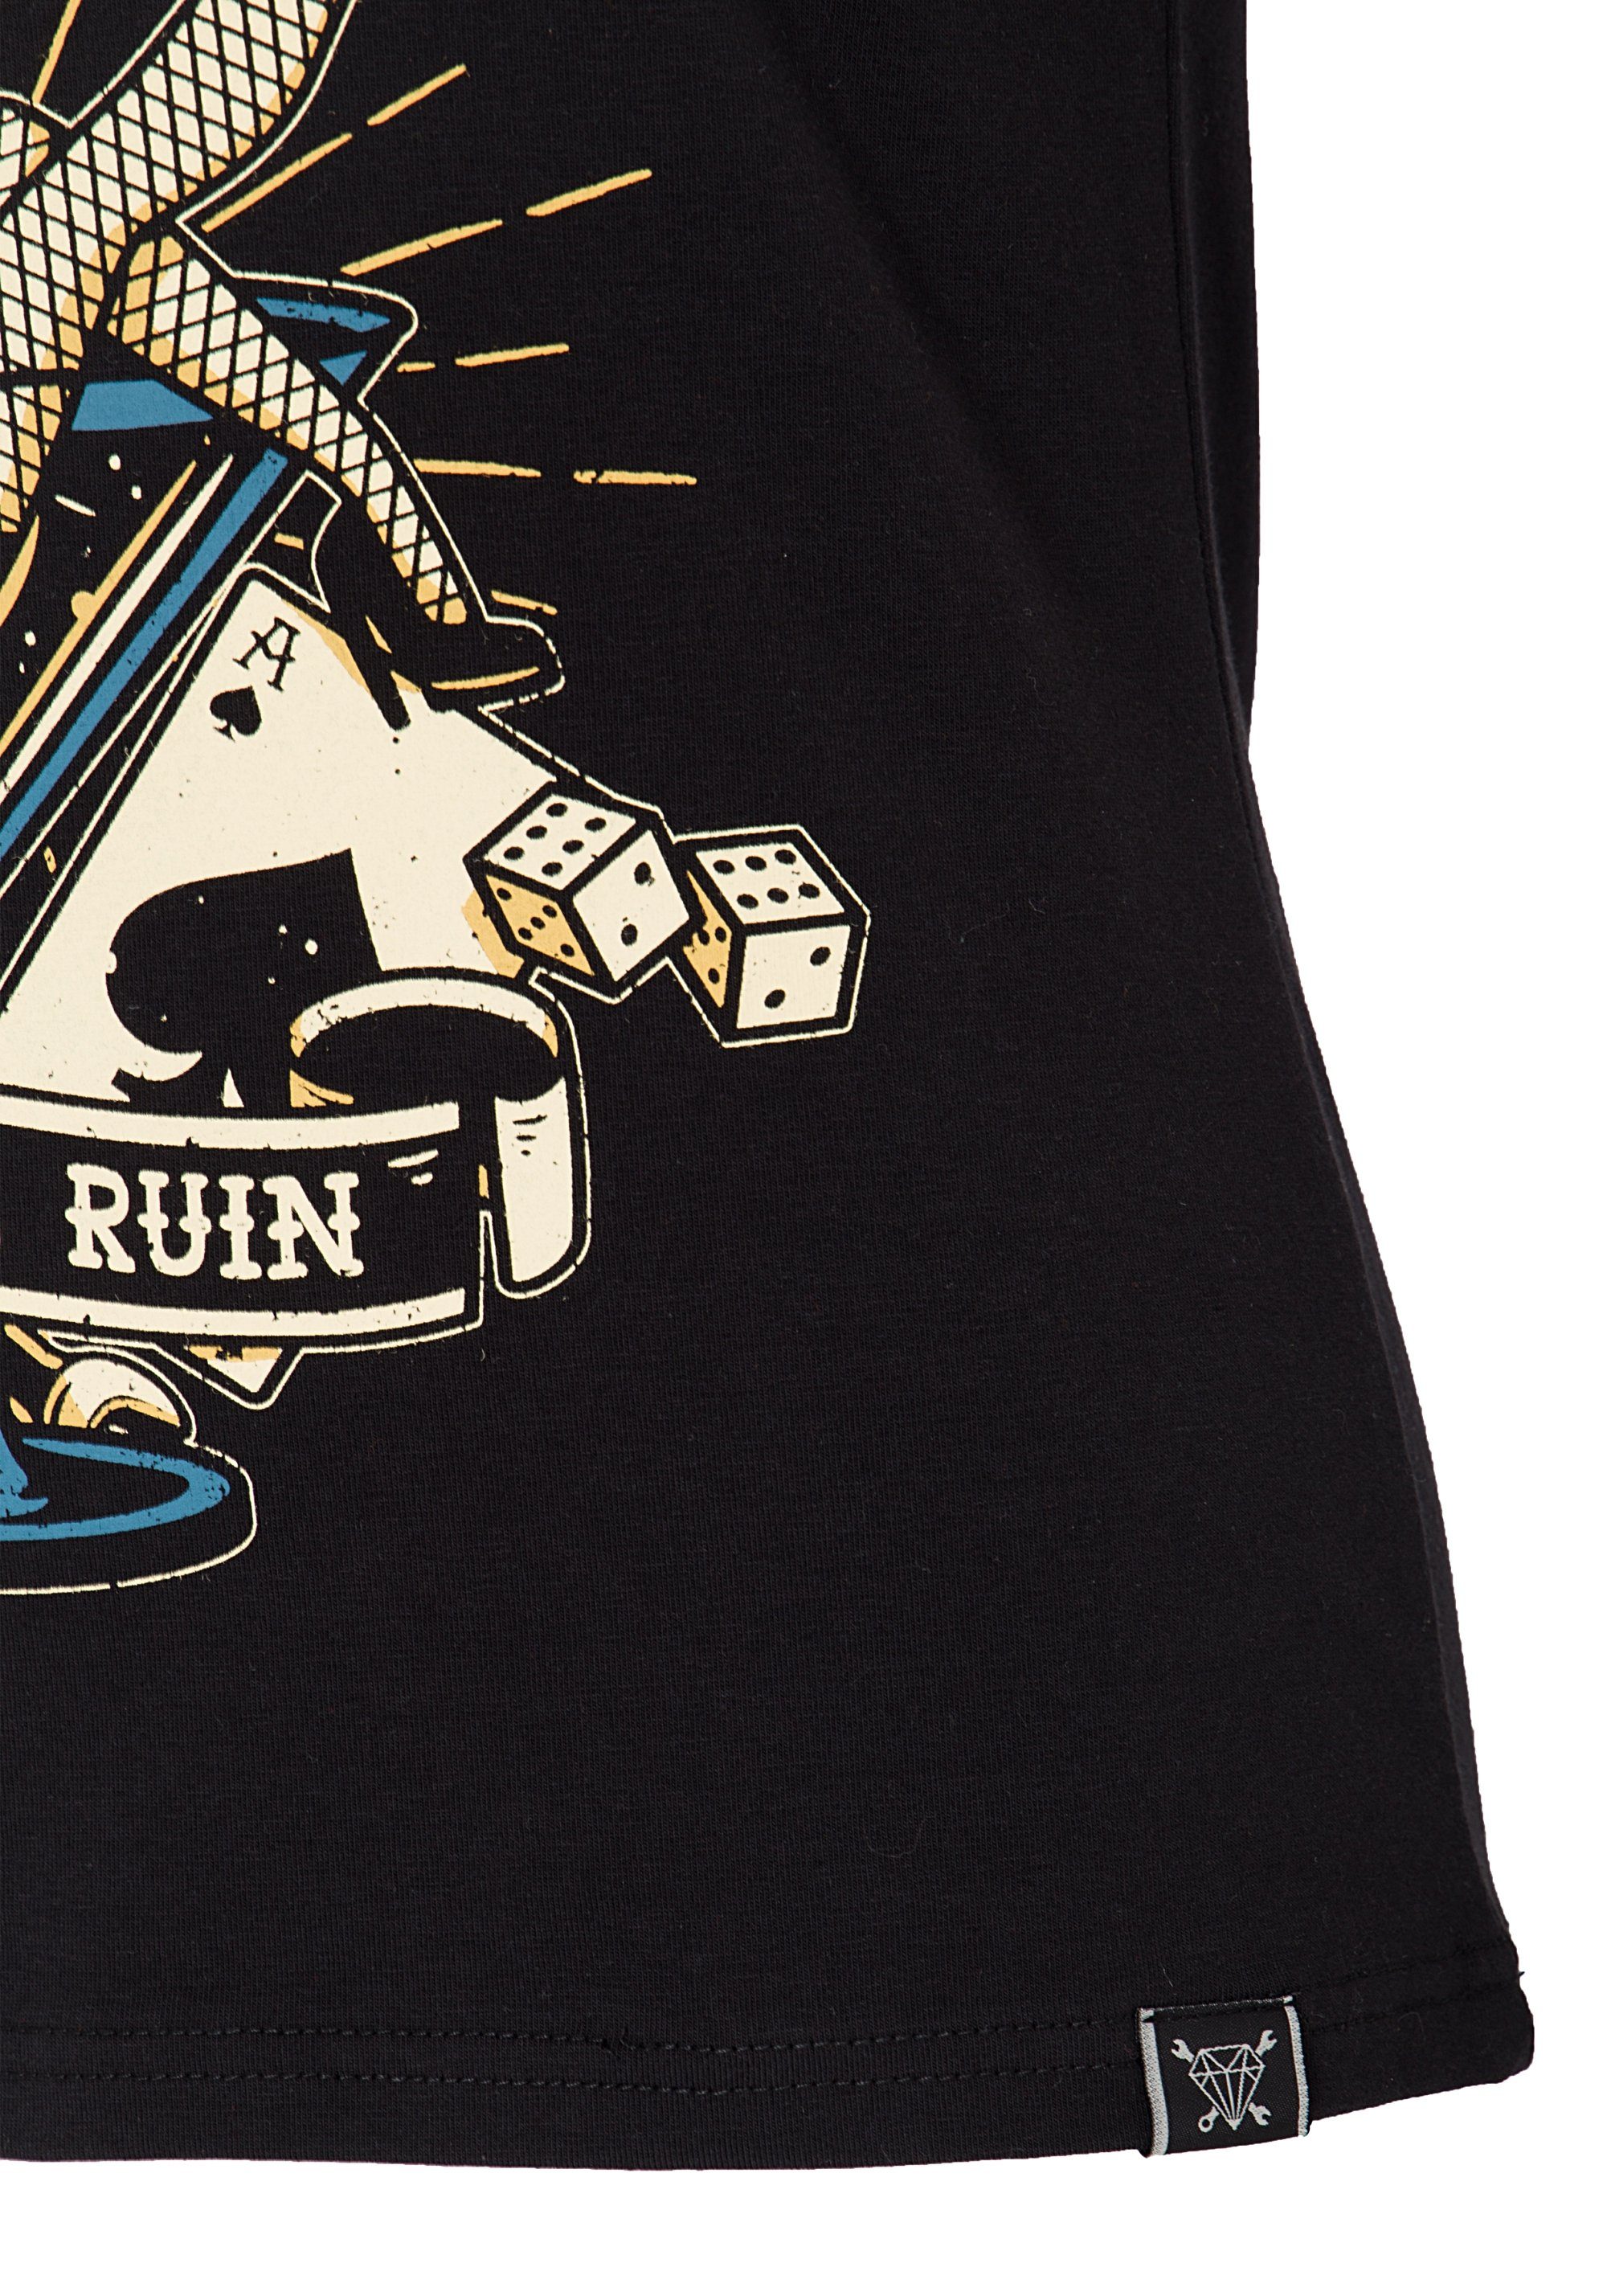 Retro-Print und Kurzarmshirt Logo-Patch mit QueenKerosin Ruin mehrfarbigem Mans